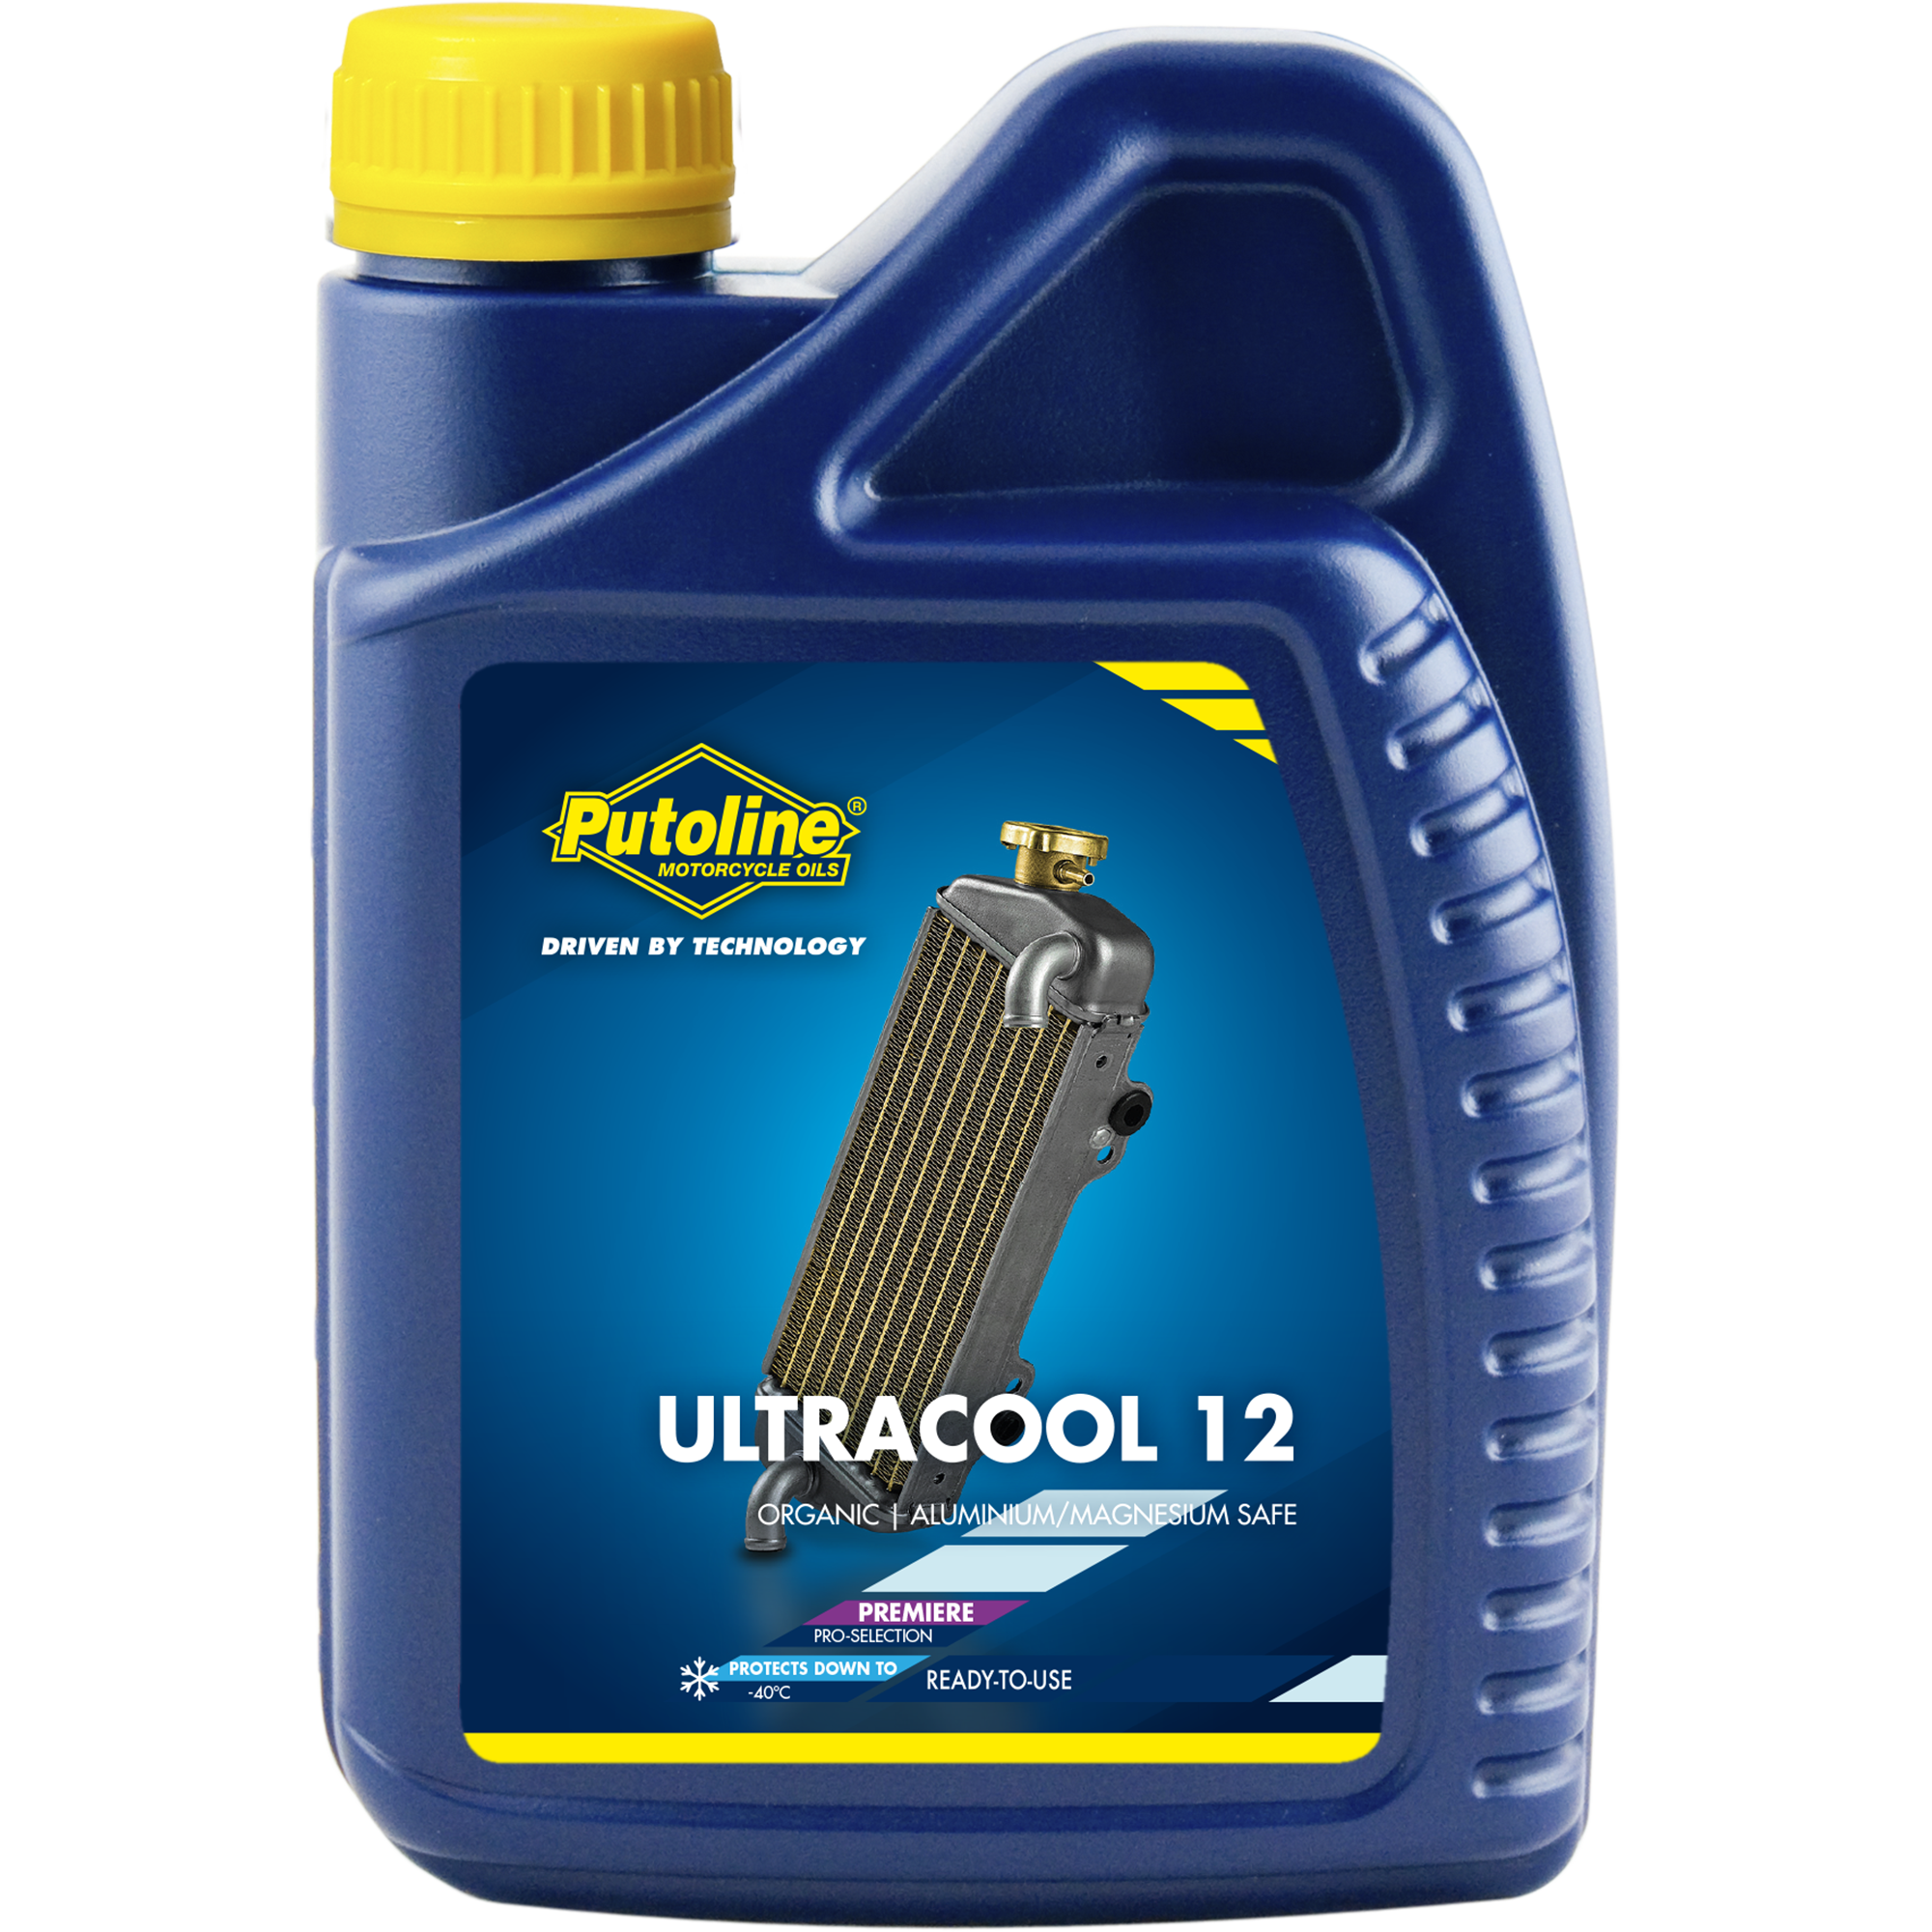 74130-1 Ultracool 12 is een hoogwaardige, gebruiksklare Long Life koelvloeistof (vorstbeveiliging -40°C), waarbij gebruik is gemaakt van een gepatenteerde silicaatvrije technologie op basis van carboxylzuren.